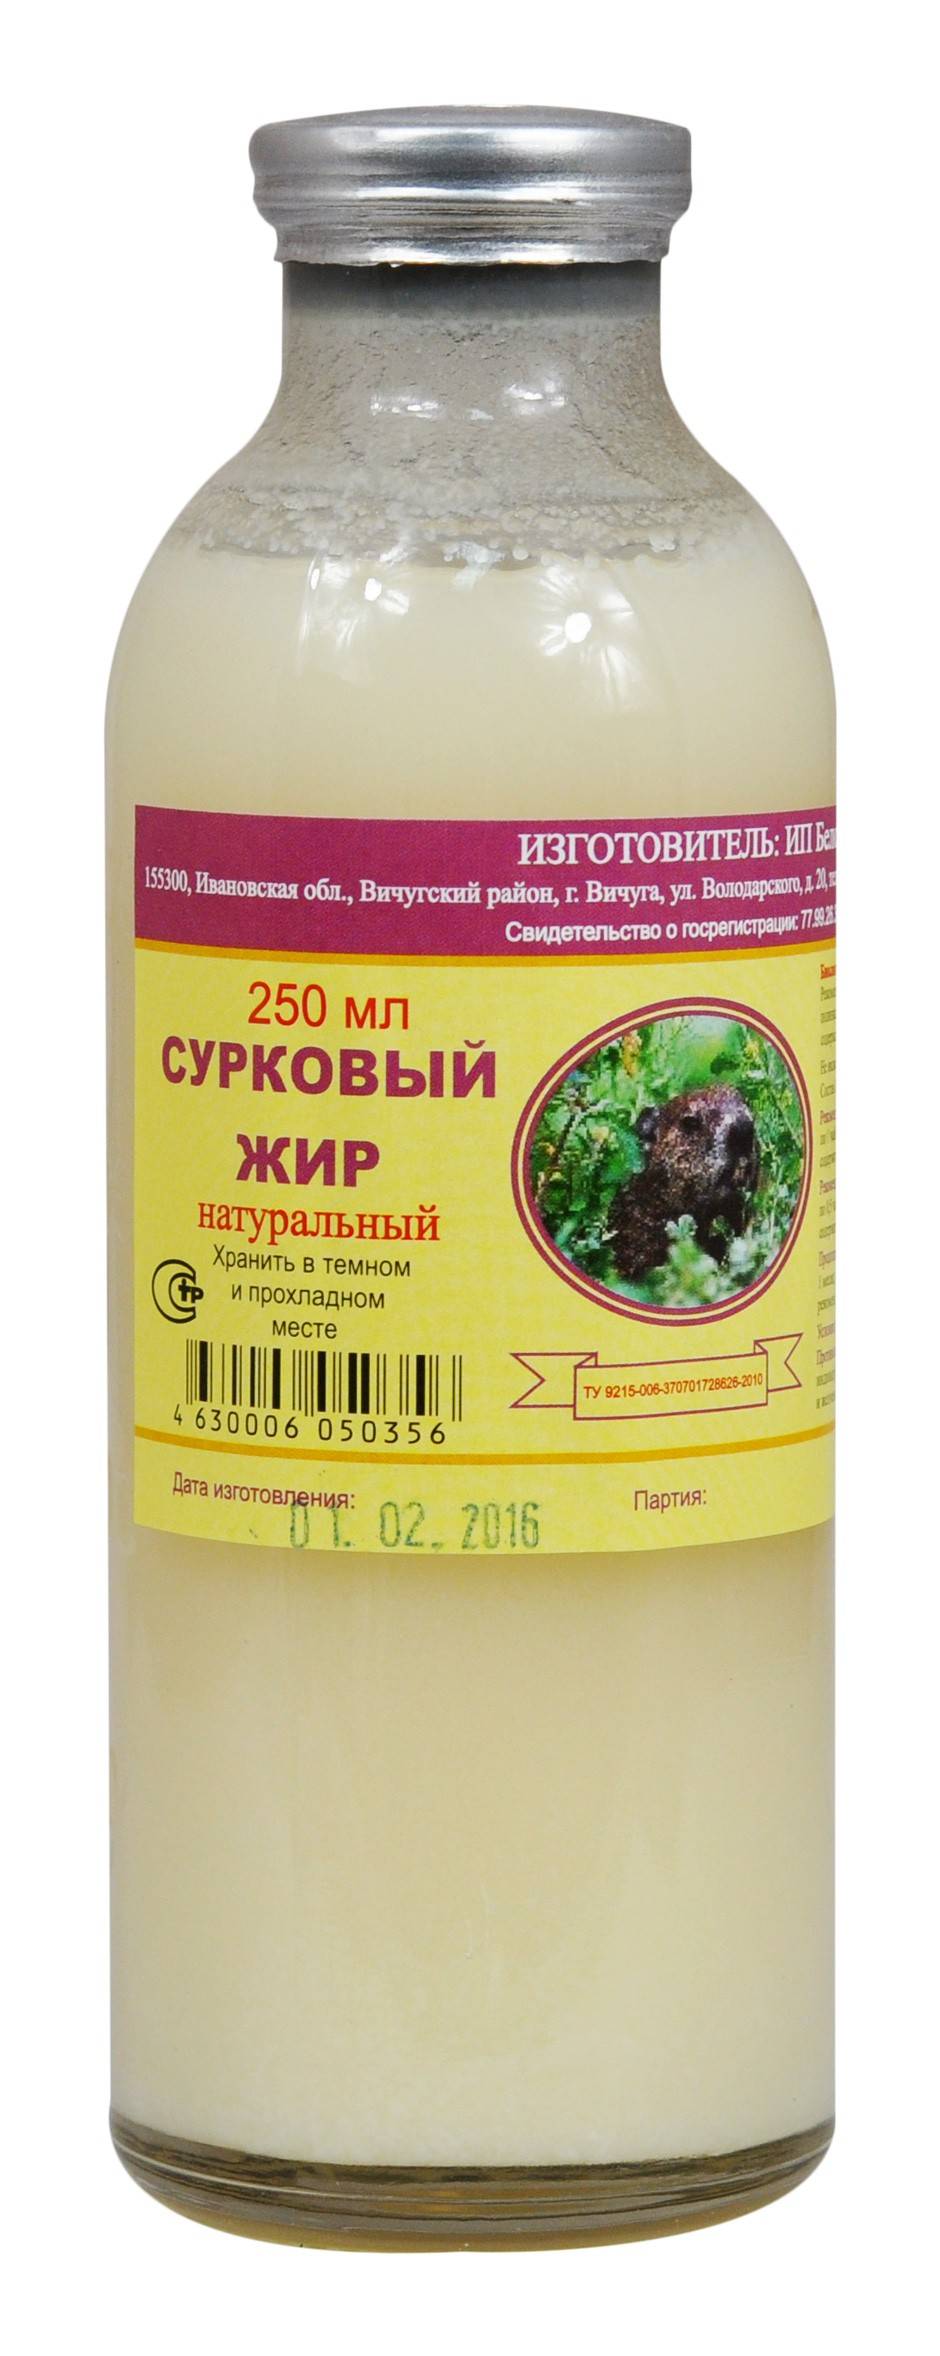 Купить онлайн Сурковый жир, 250мл в интернет-магазине Беришка с доставкой по Хабаровску и по России недорого.